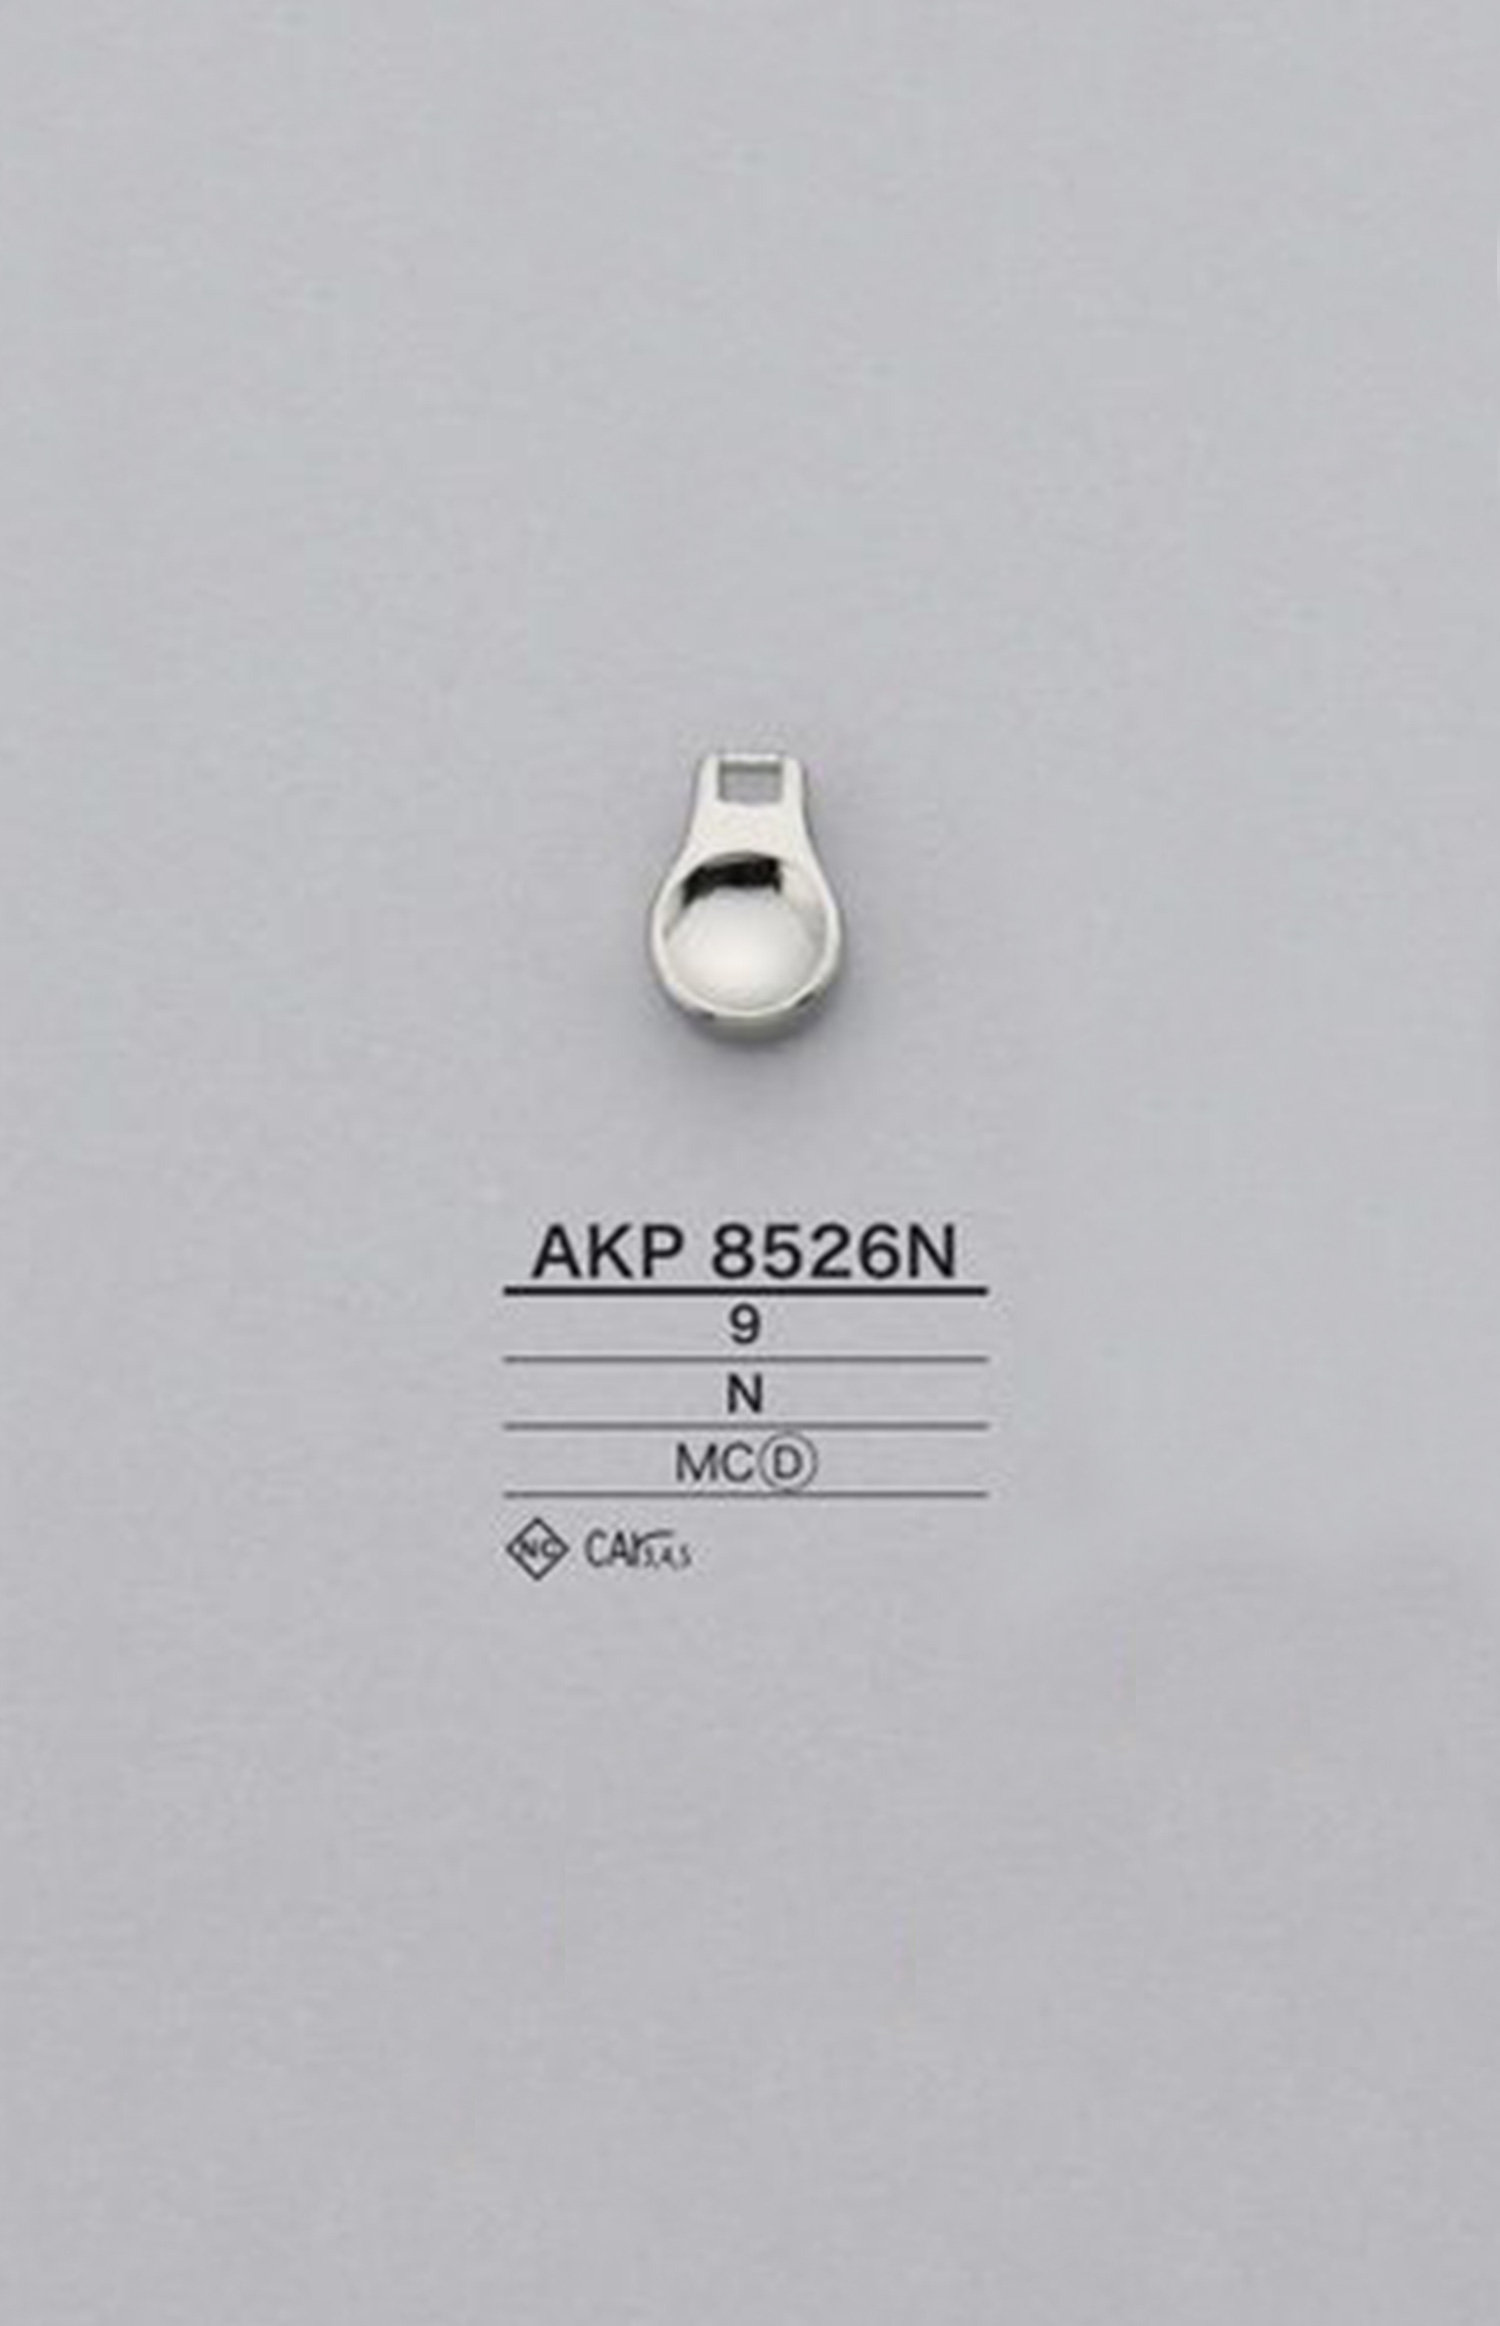 AKP8526N Round Zipper Point (Pull Tab) IRIS